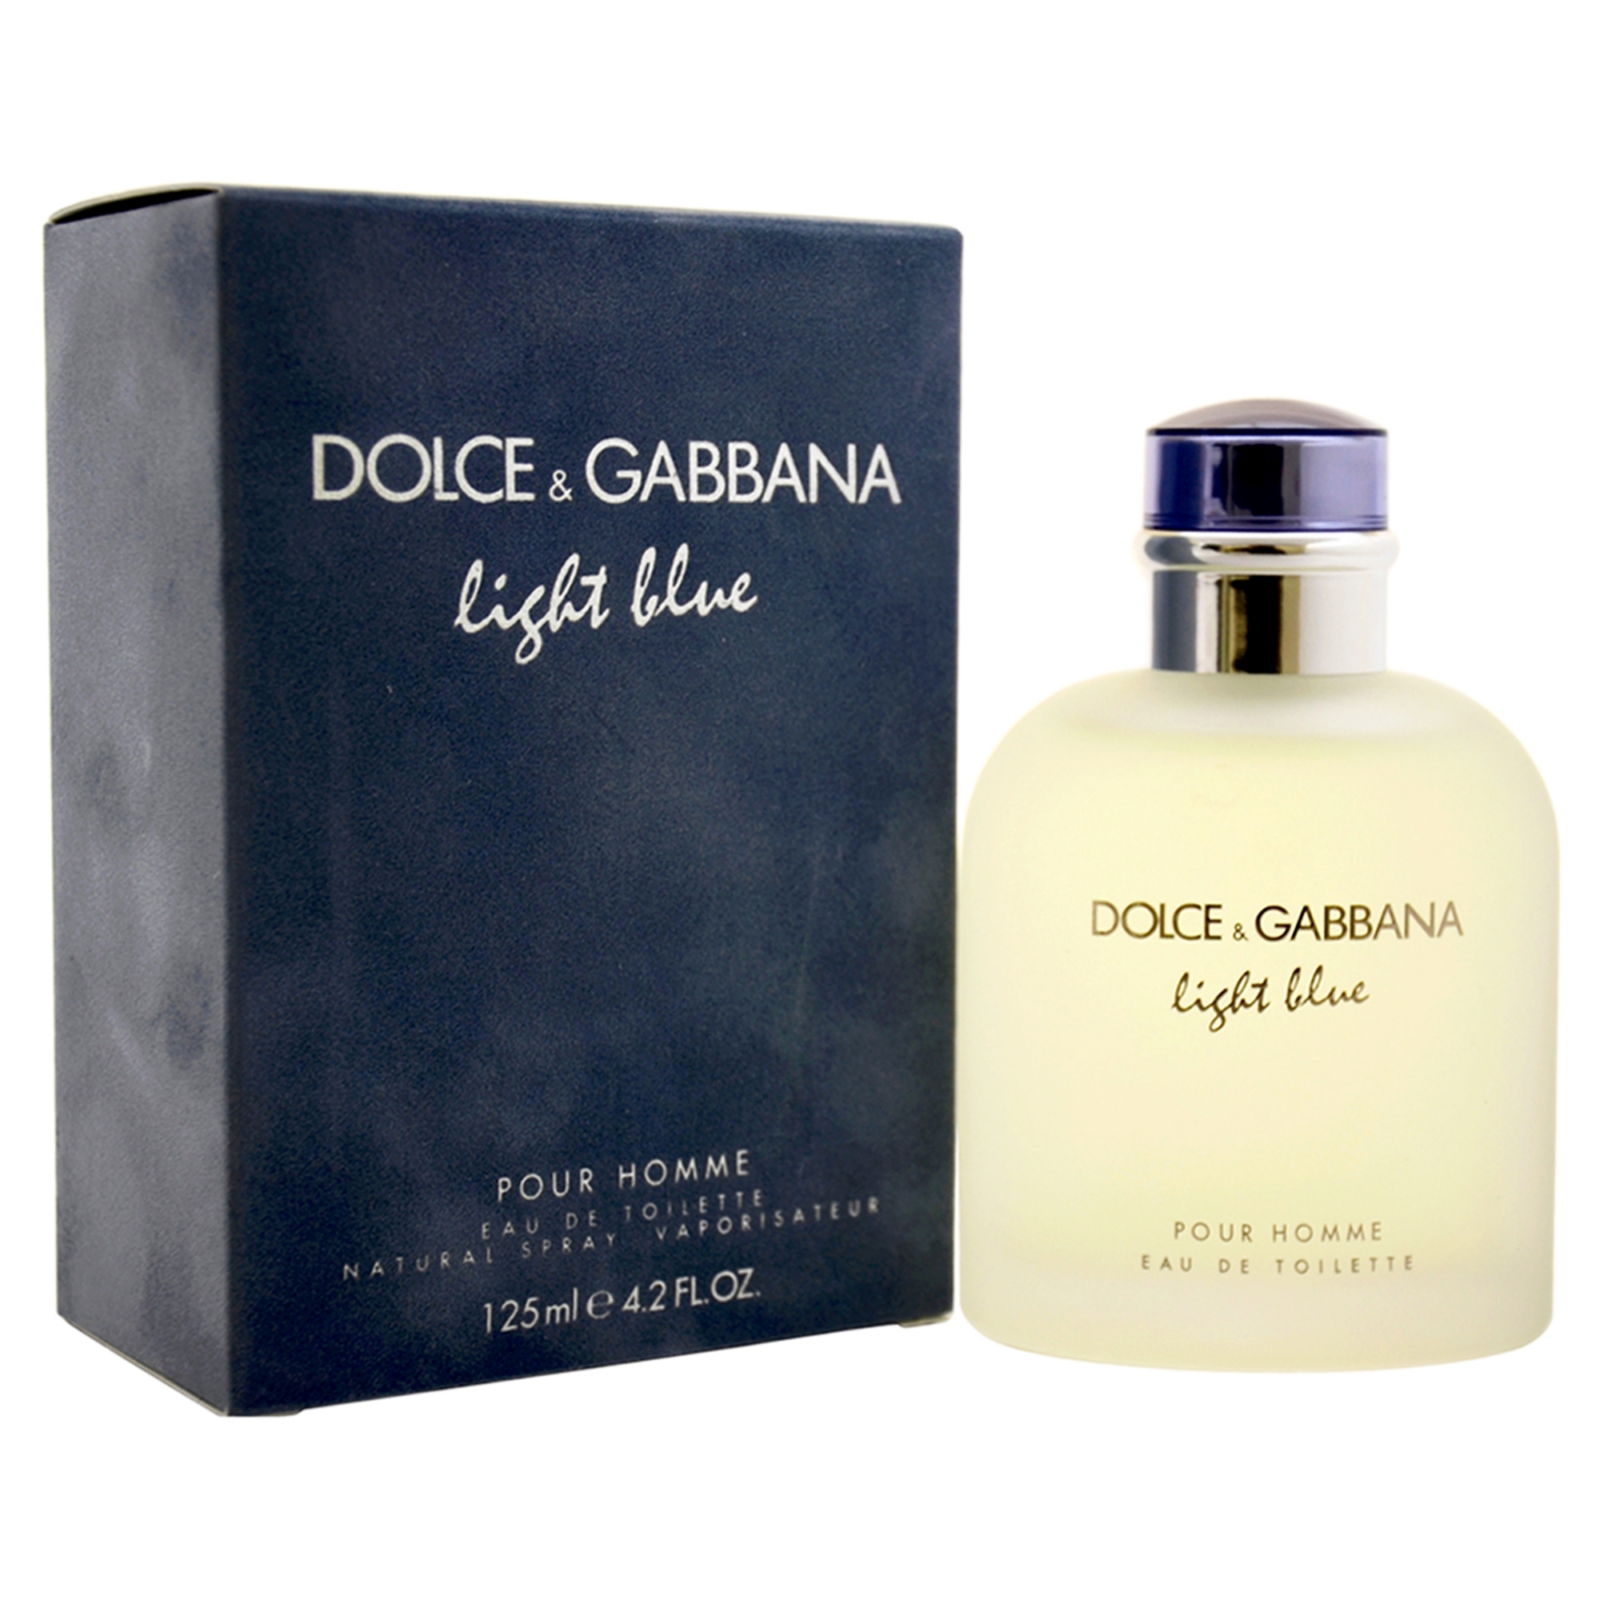 Dolce & Gabbana Light Blue by  for Men - 4.2 oz EDT Spray